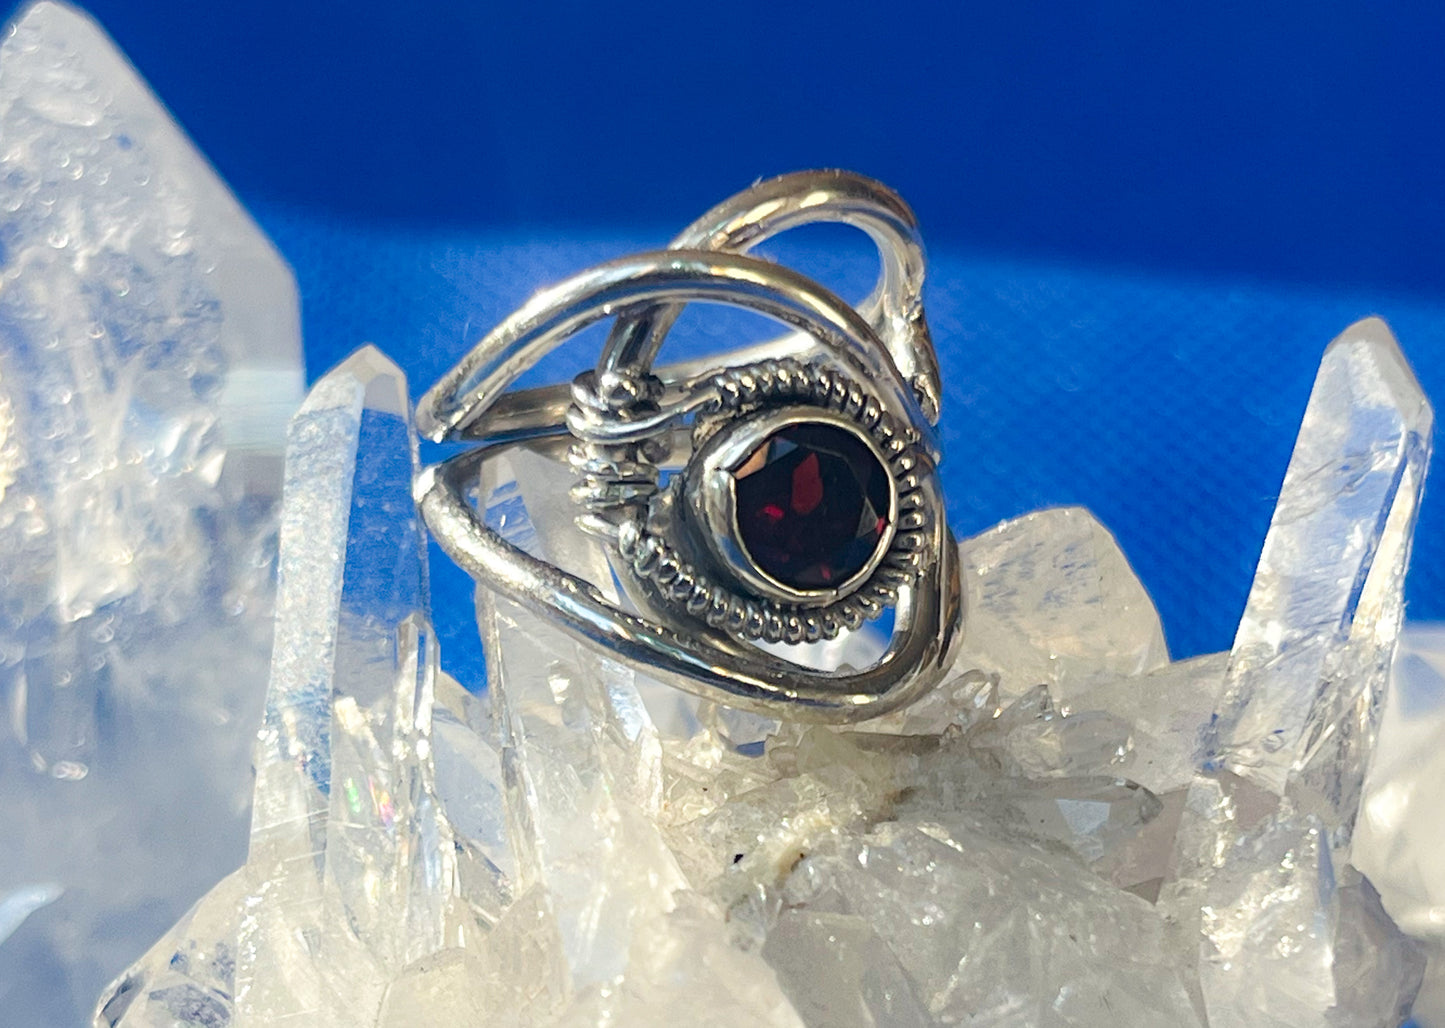 Red Garnet ring